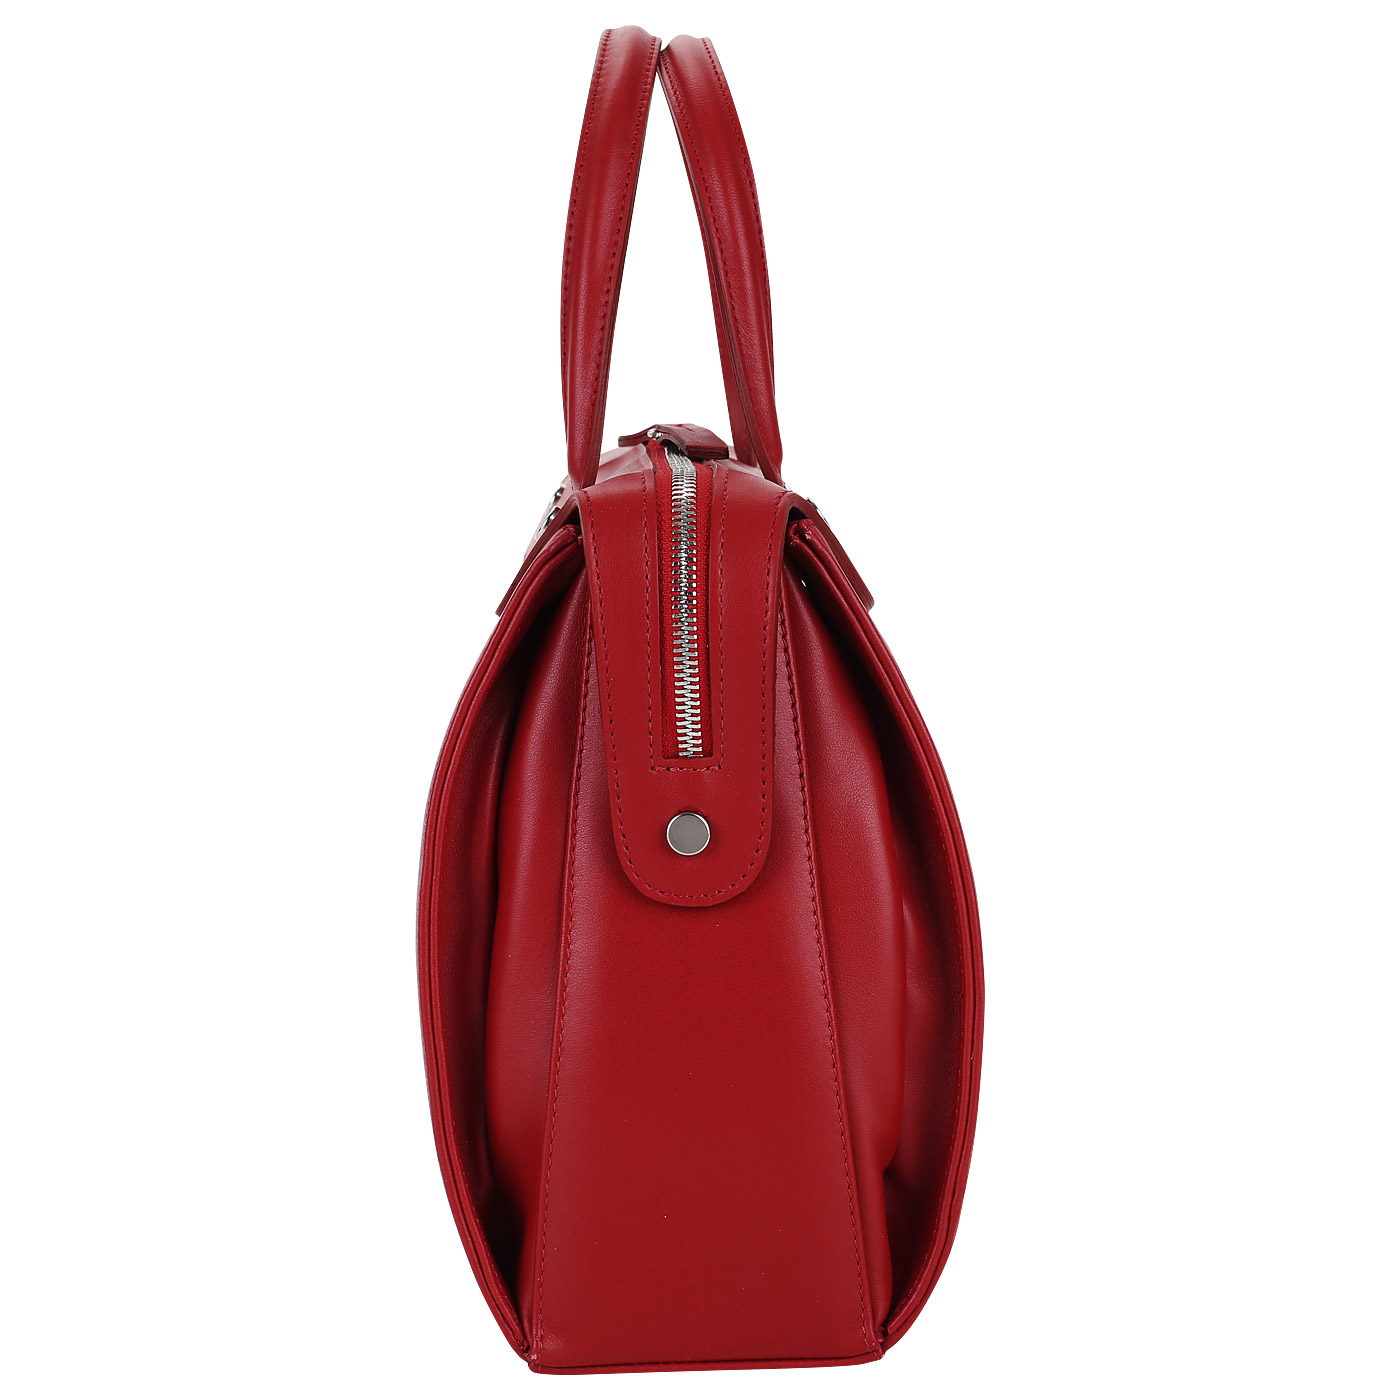 Красная женская сумка из кожи Gilda Tonelli Tresor